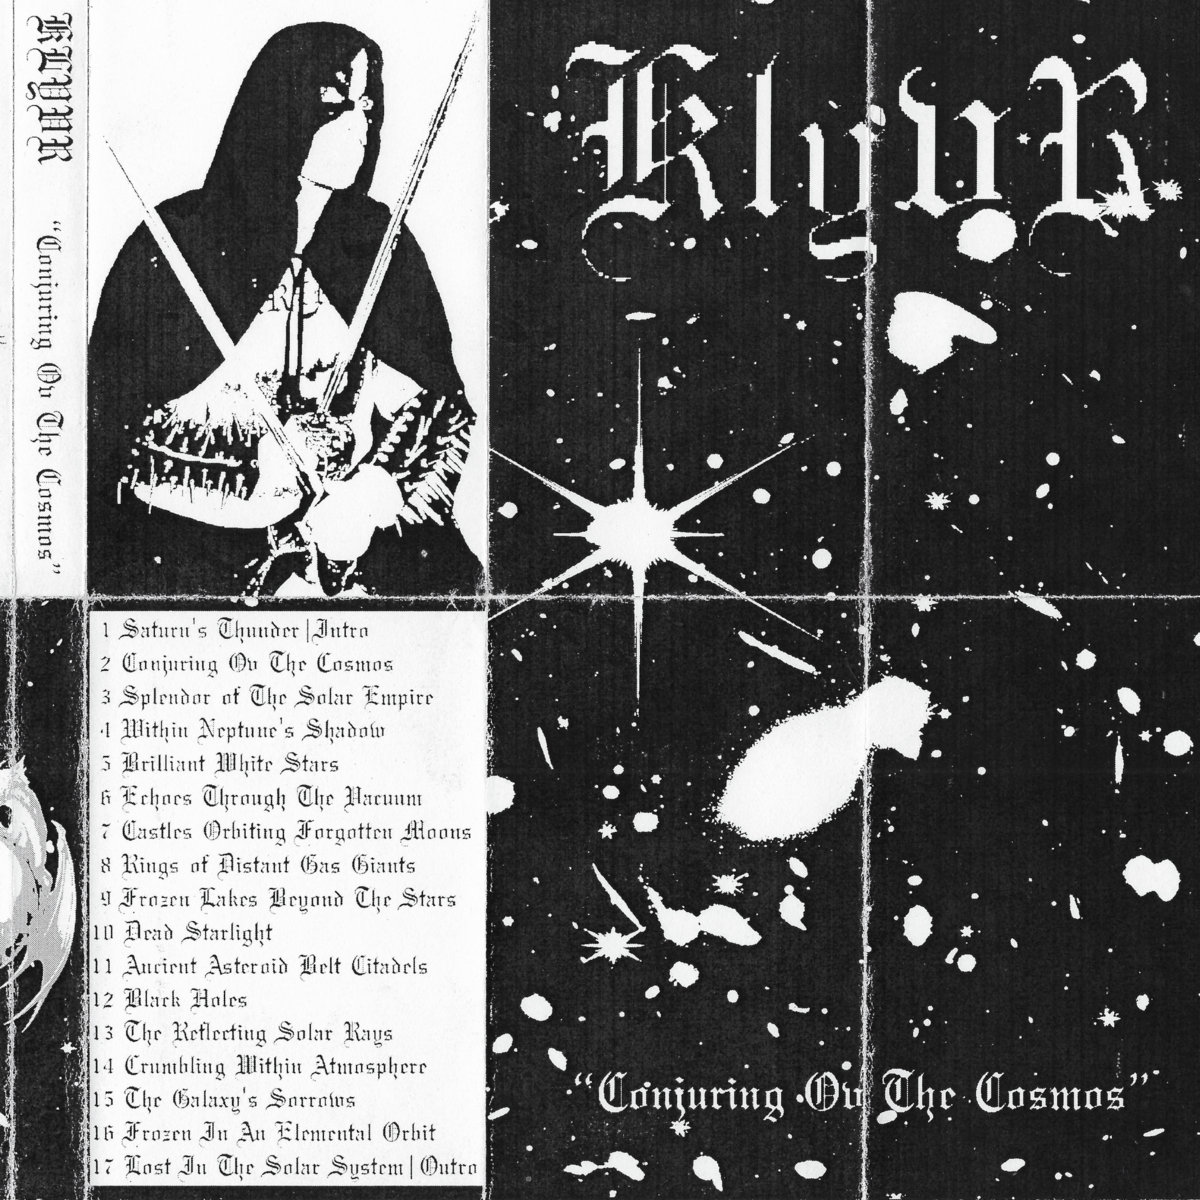 Klyvr - "Conjuring Ov The Cosmos" - 2023